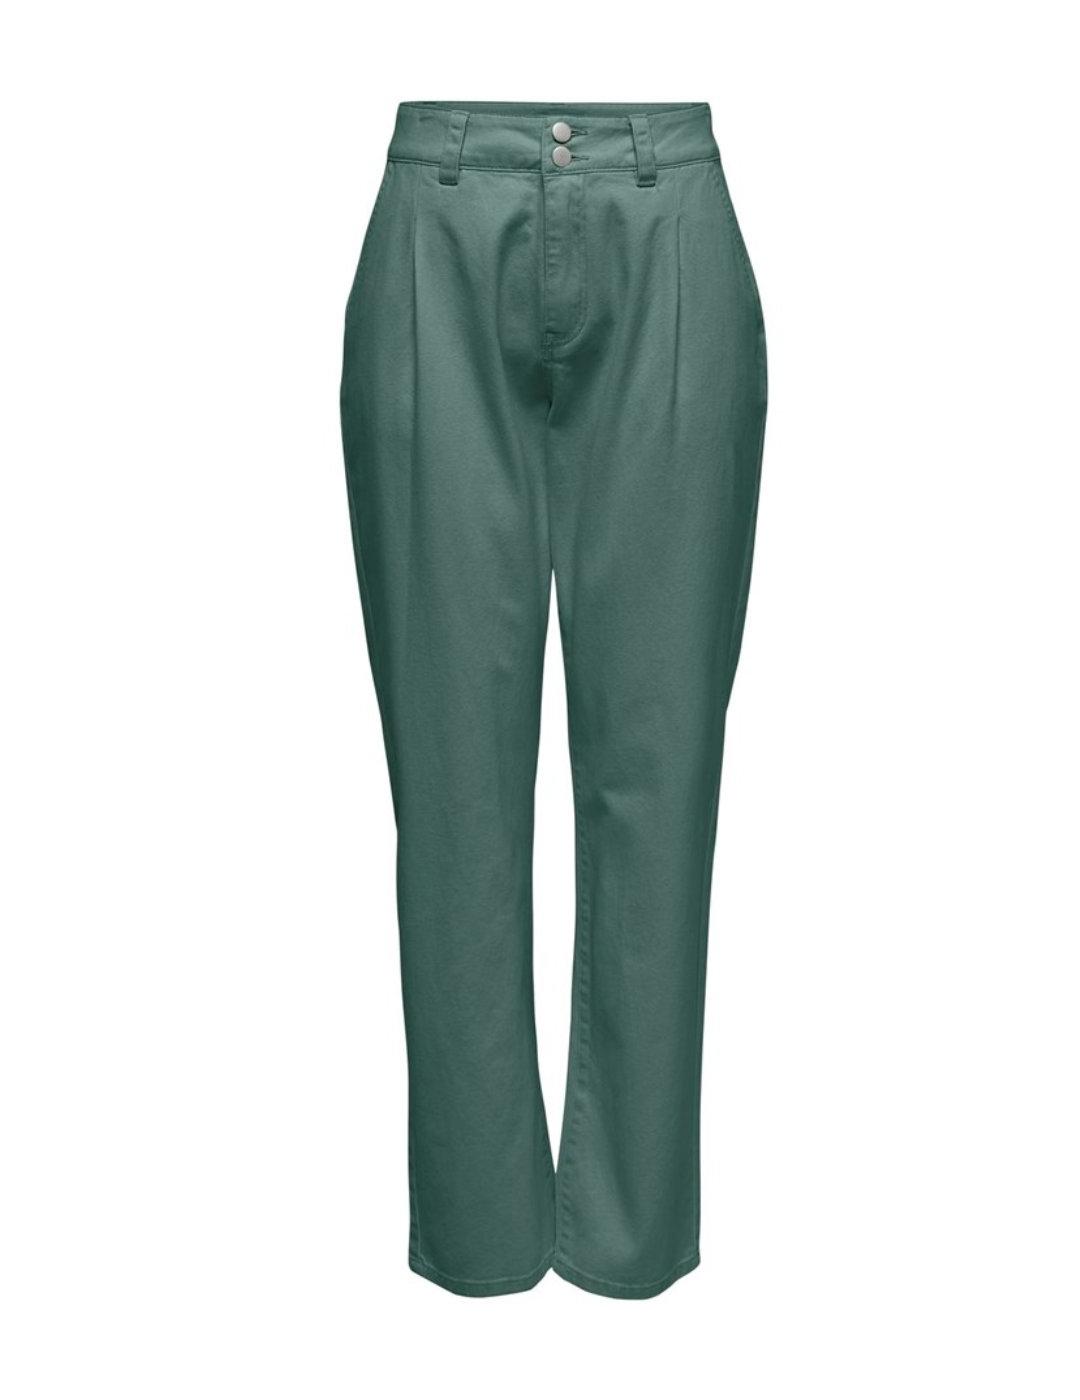 Pantalón chino Darsy verde oscuro tiro alto para mujer